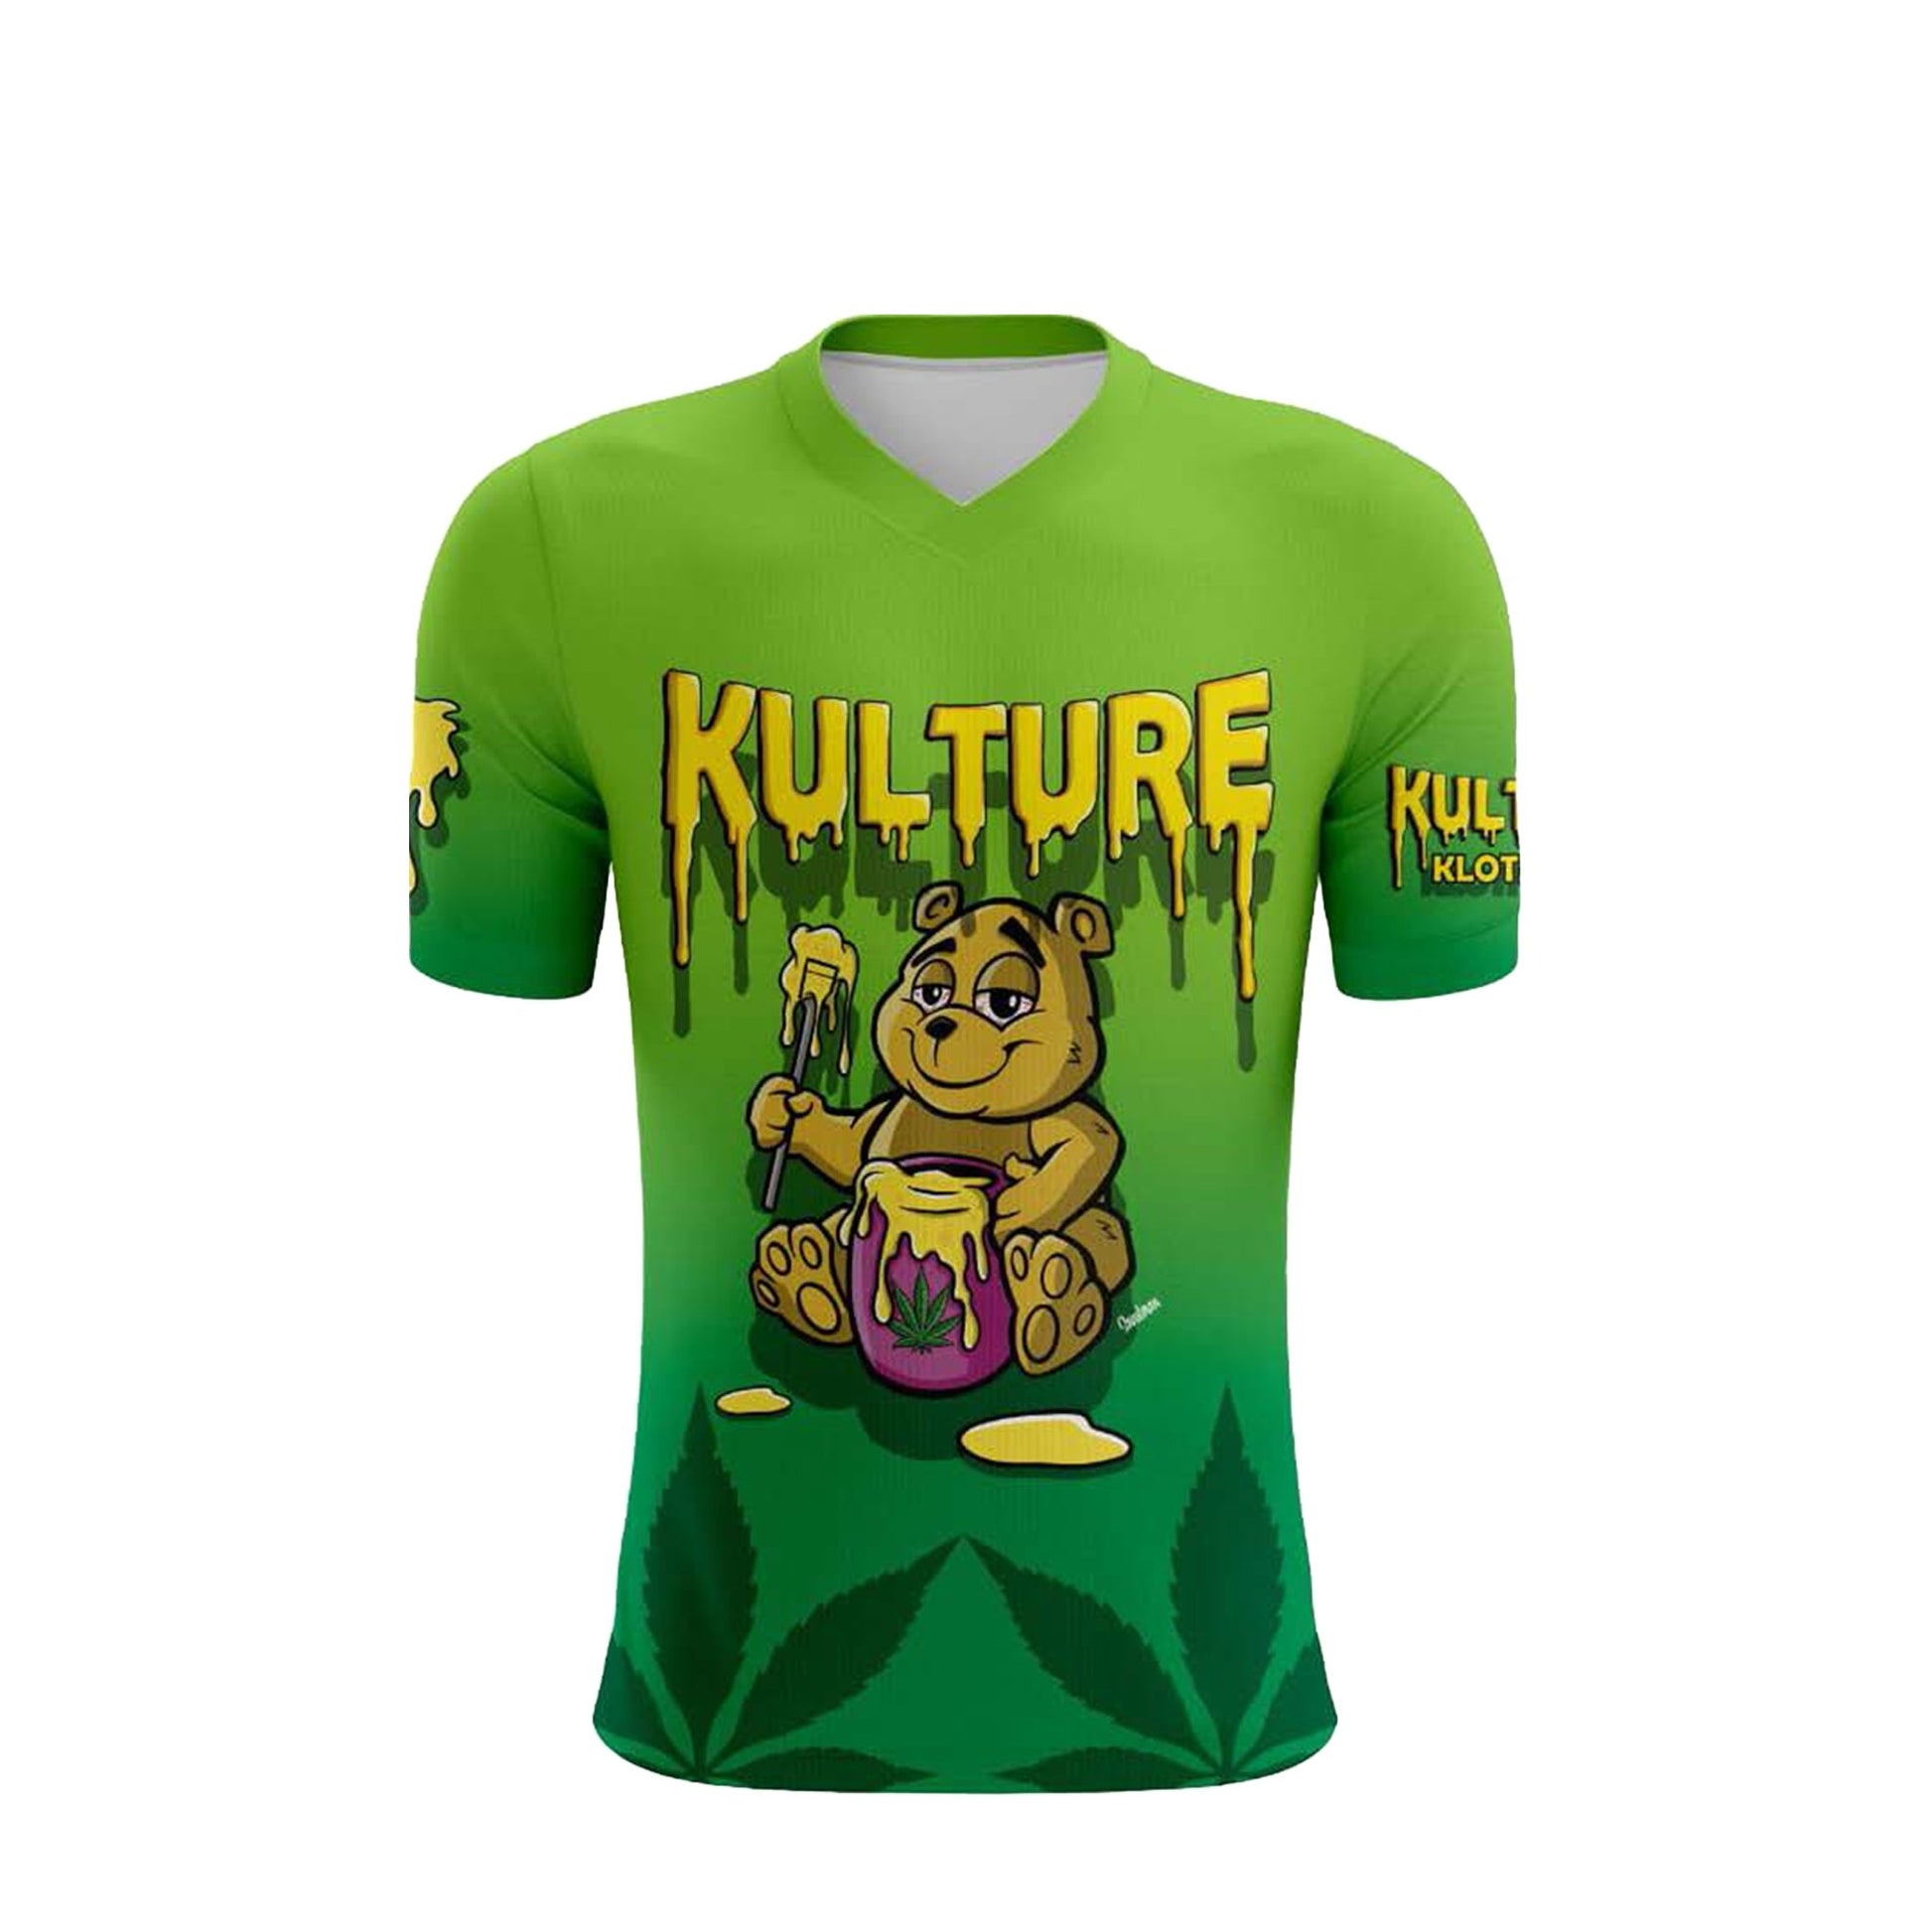 Honey Bear Dye Sublimation V-Neck Shirt - Kulture Klothing Club -